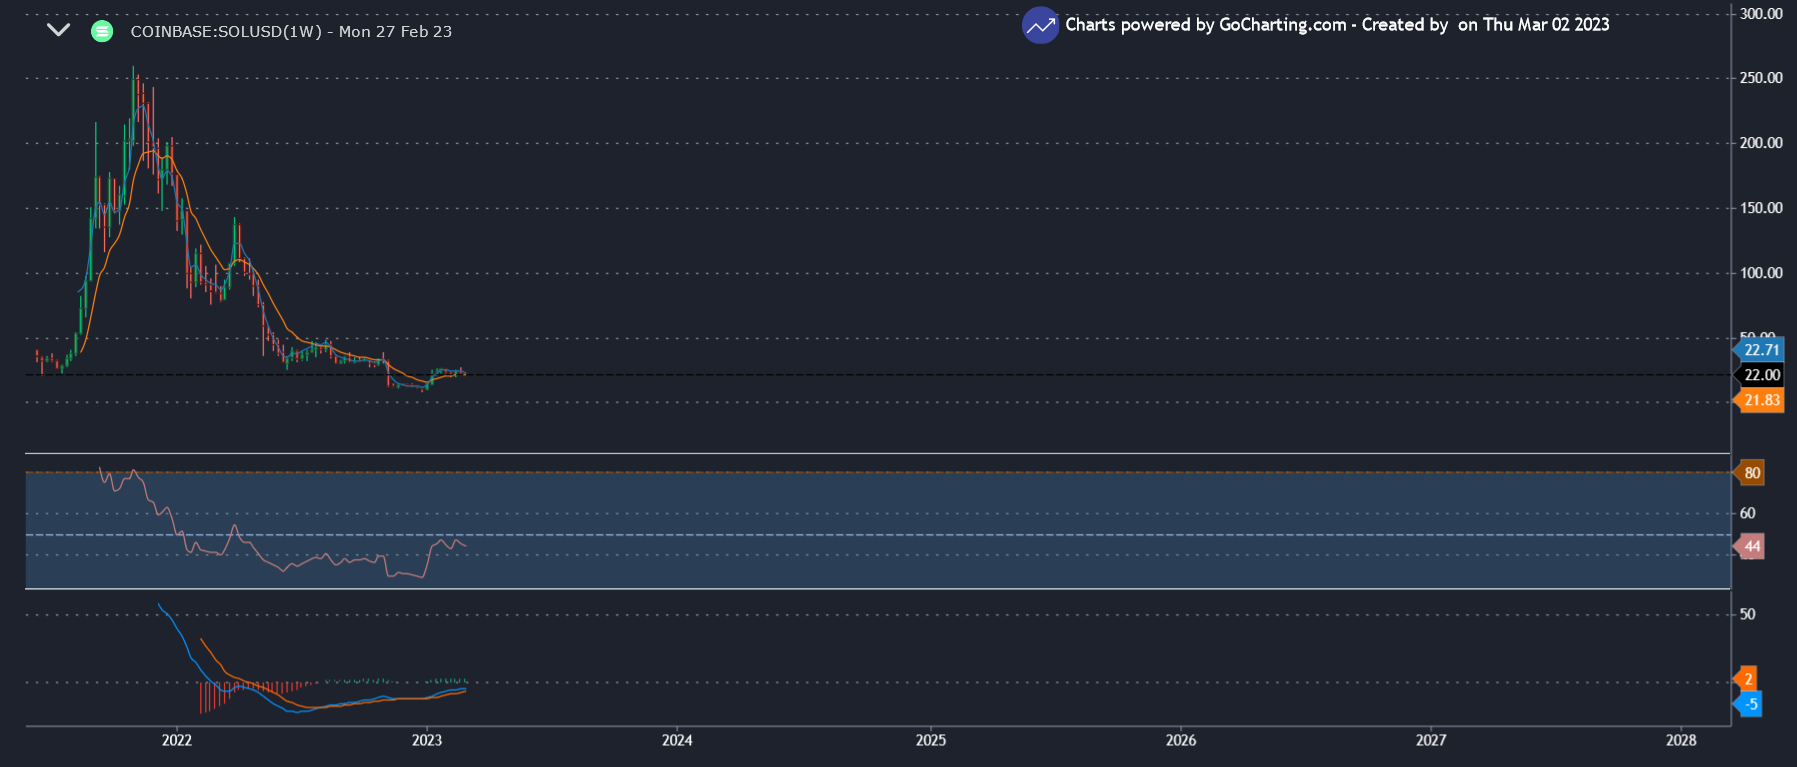 سولانا چقدر می تواند بالا برود: SOL/USD نمودار هفتگی که قیمت را نشان می دهد - GoCharting